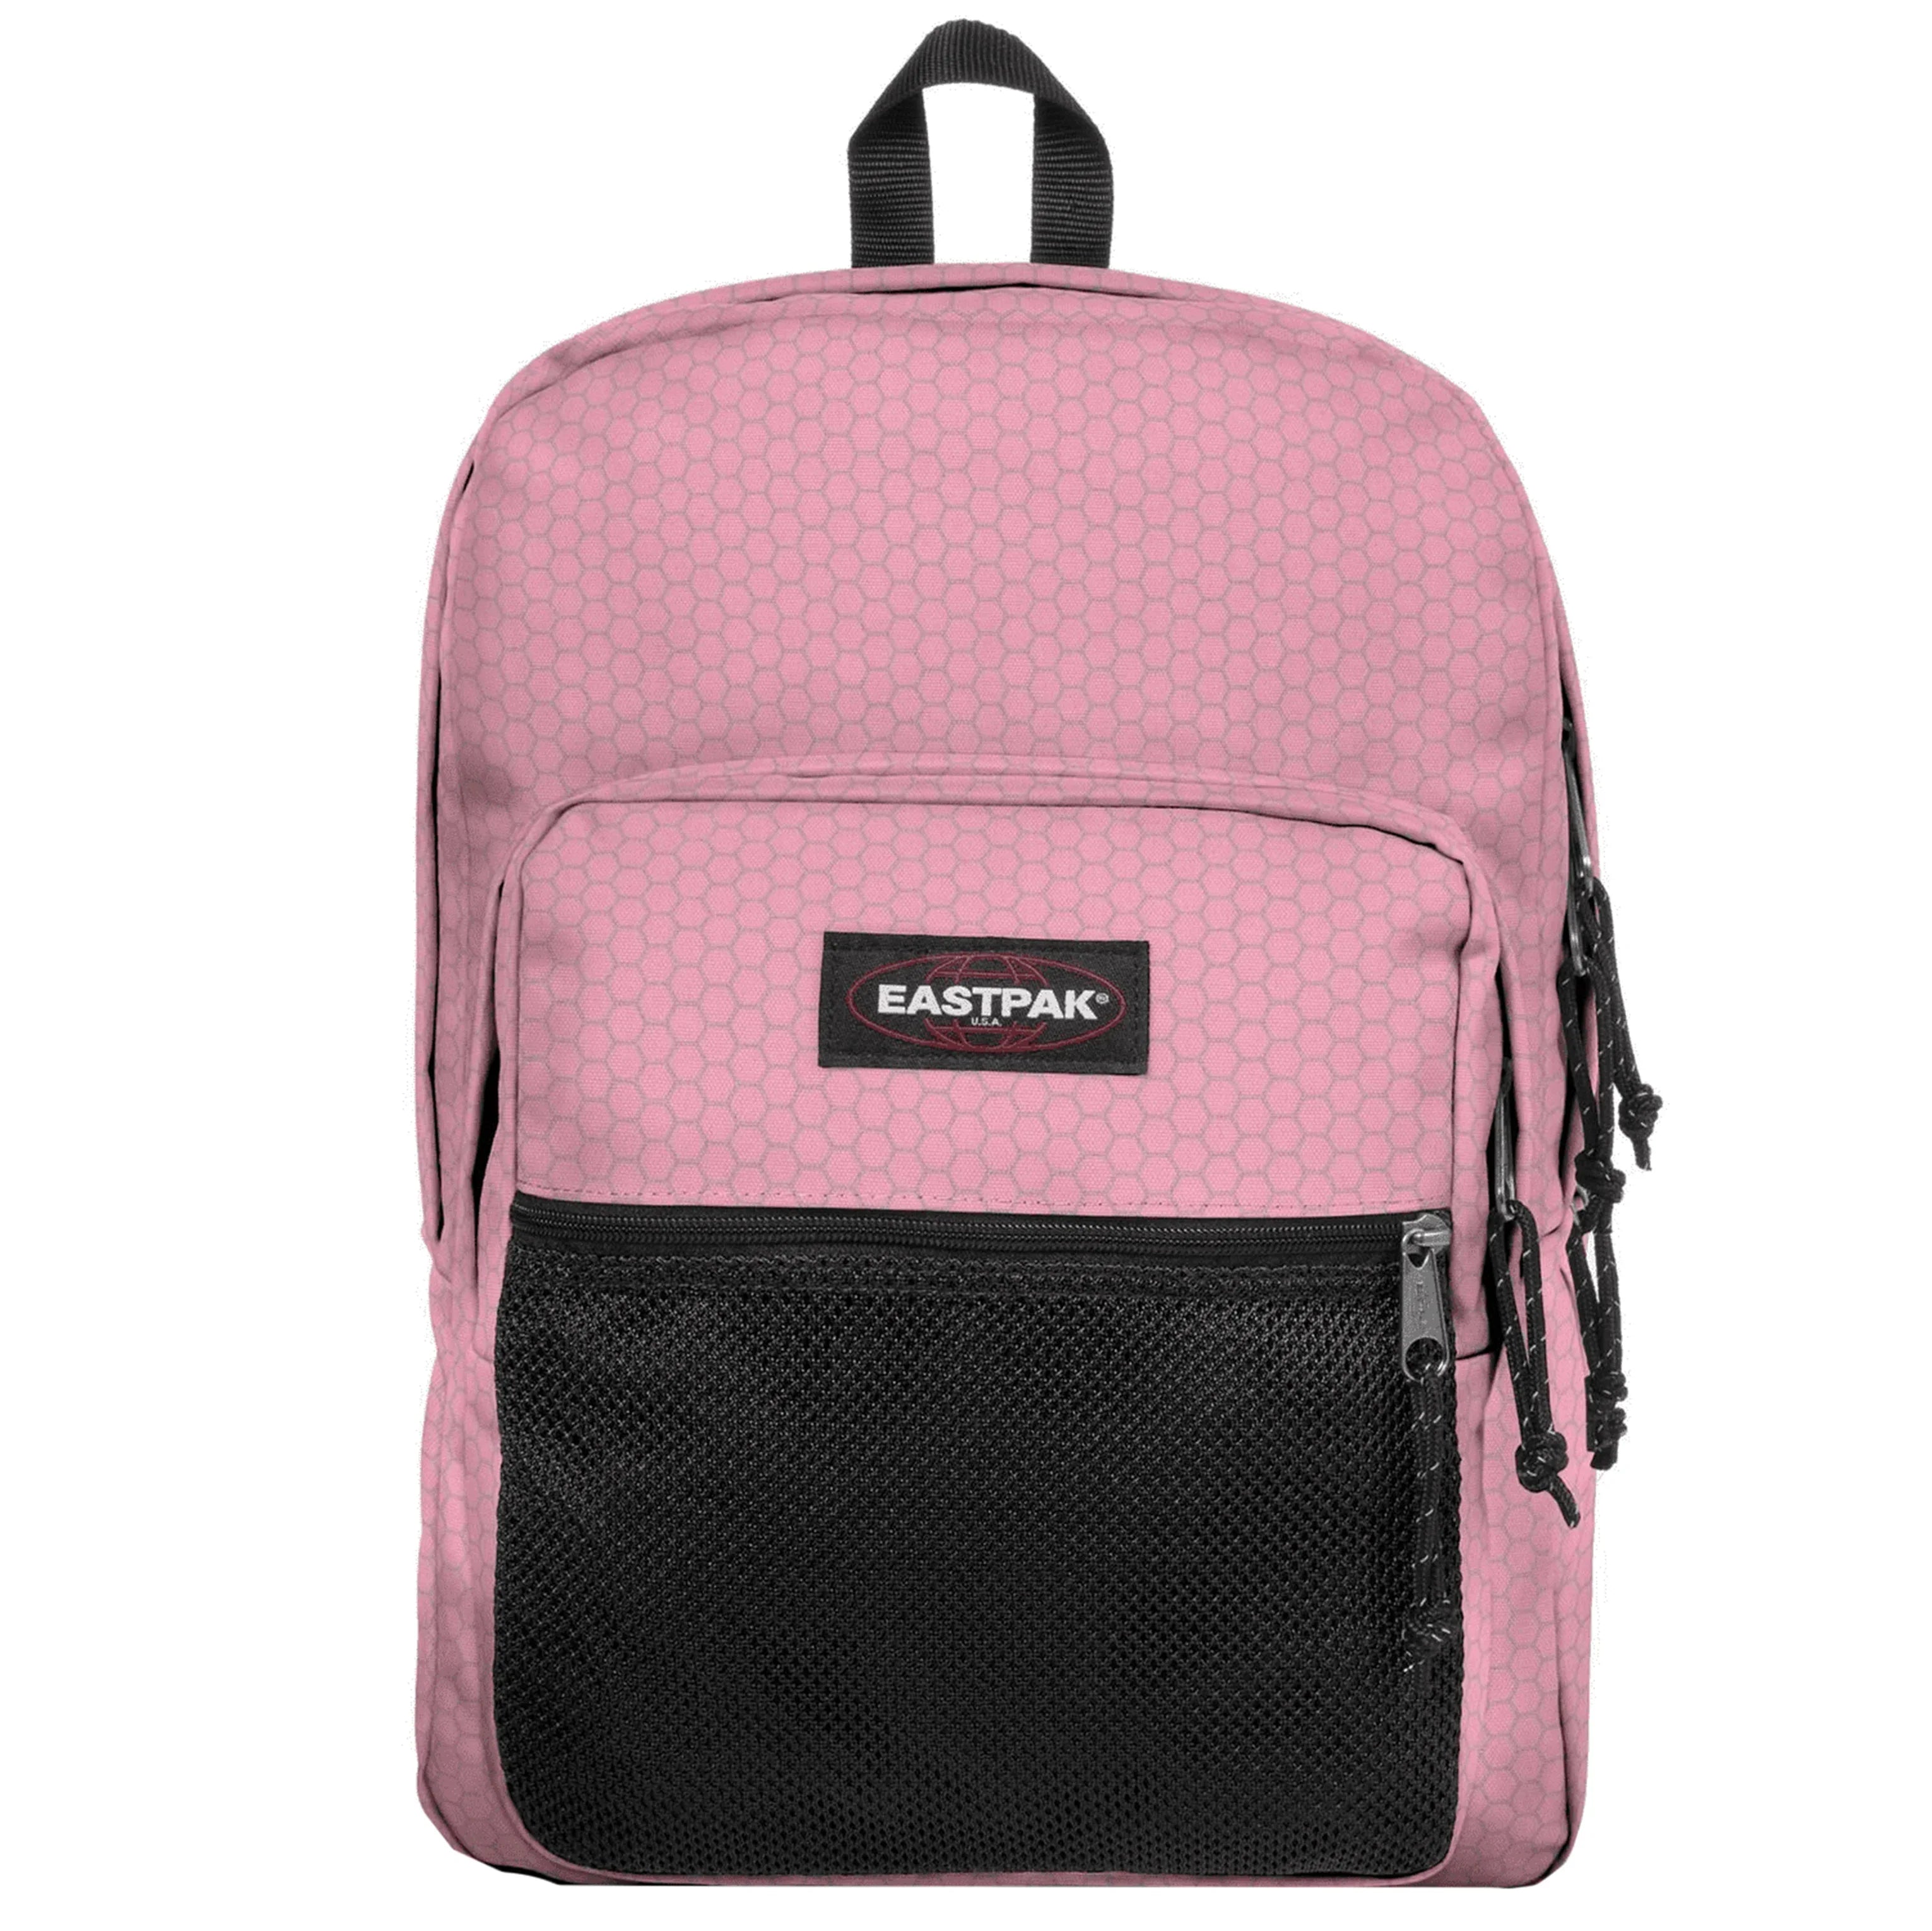 Eastpak Authentic Pinnacle leisure backpack 42 cm - Refleks Pink